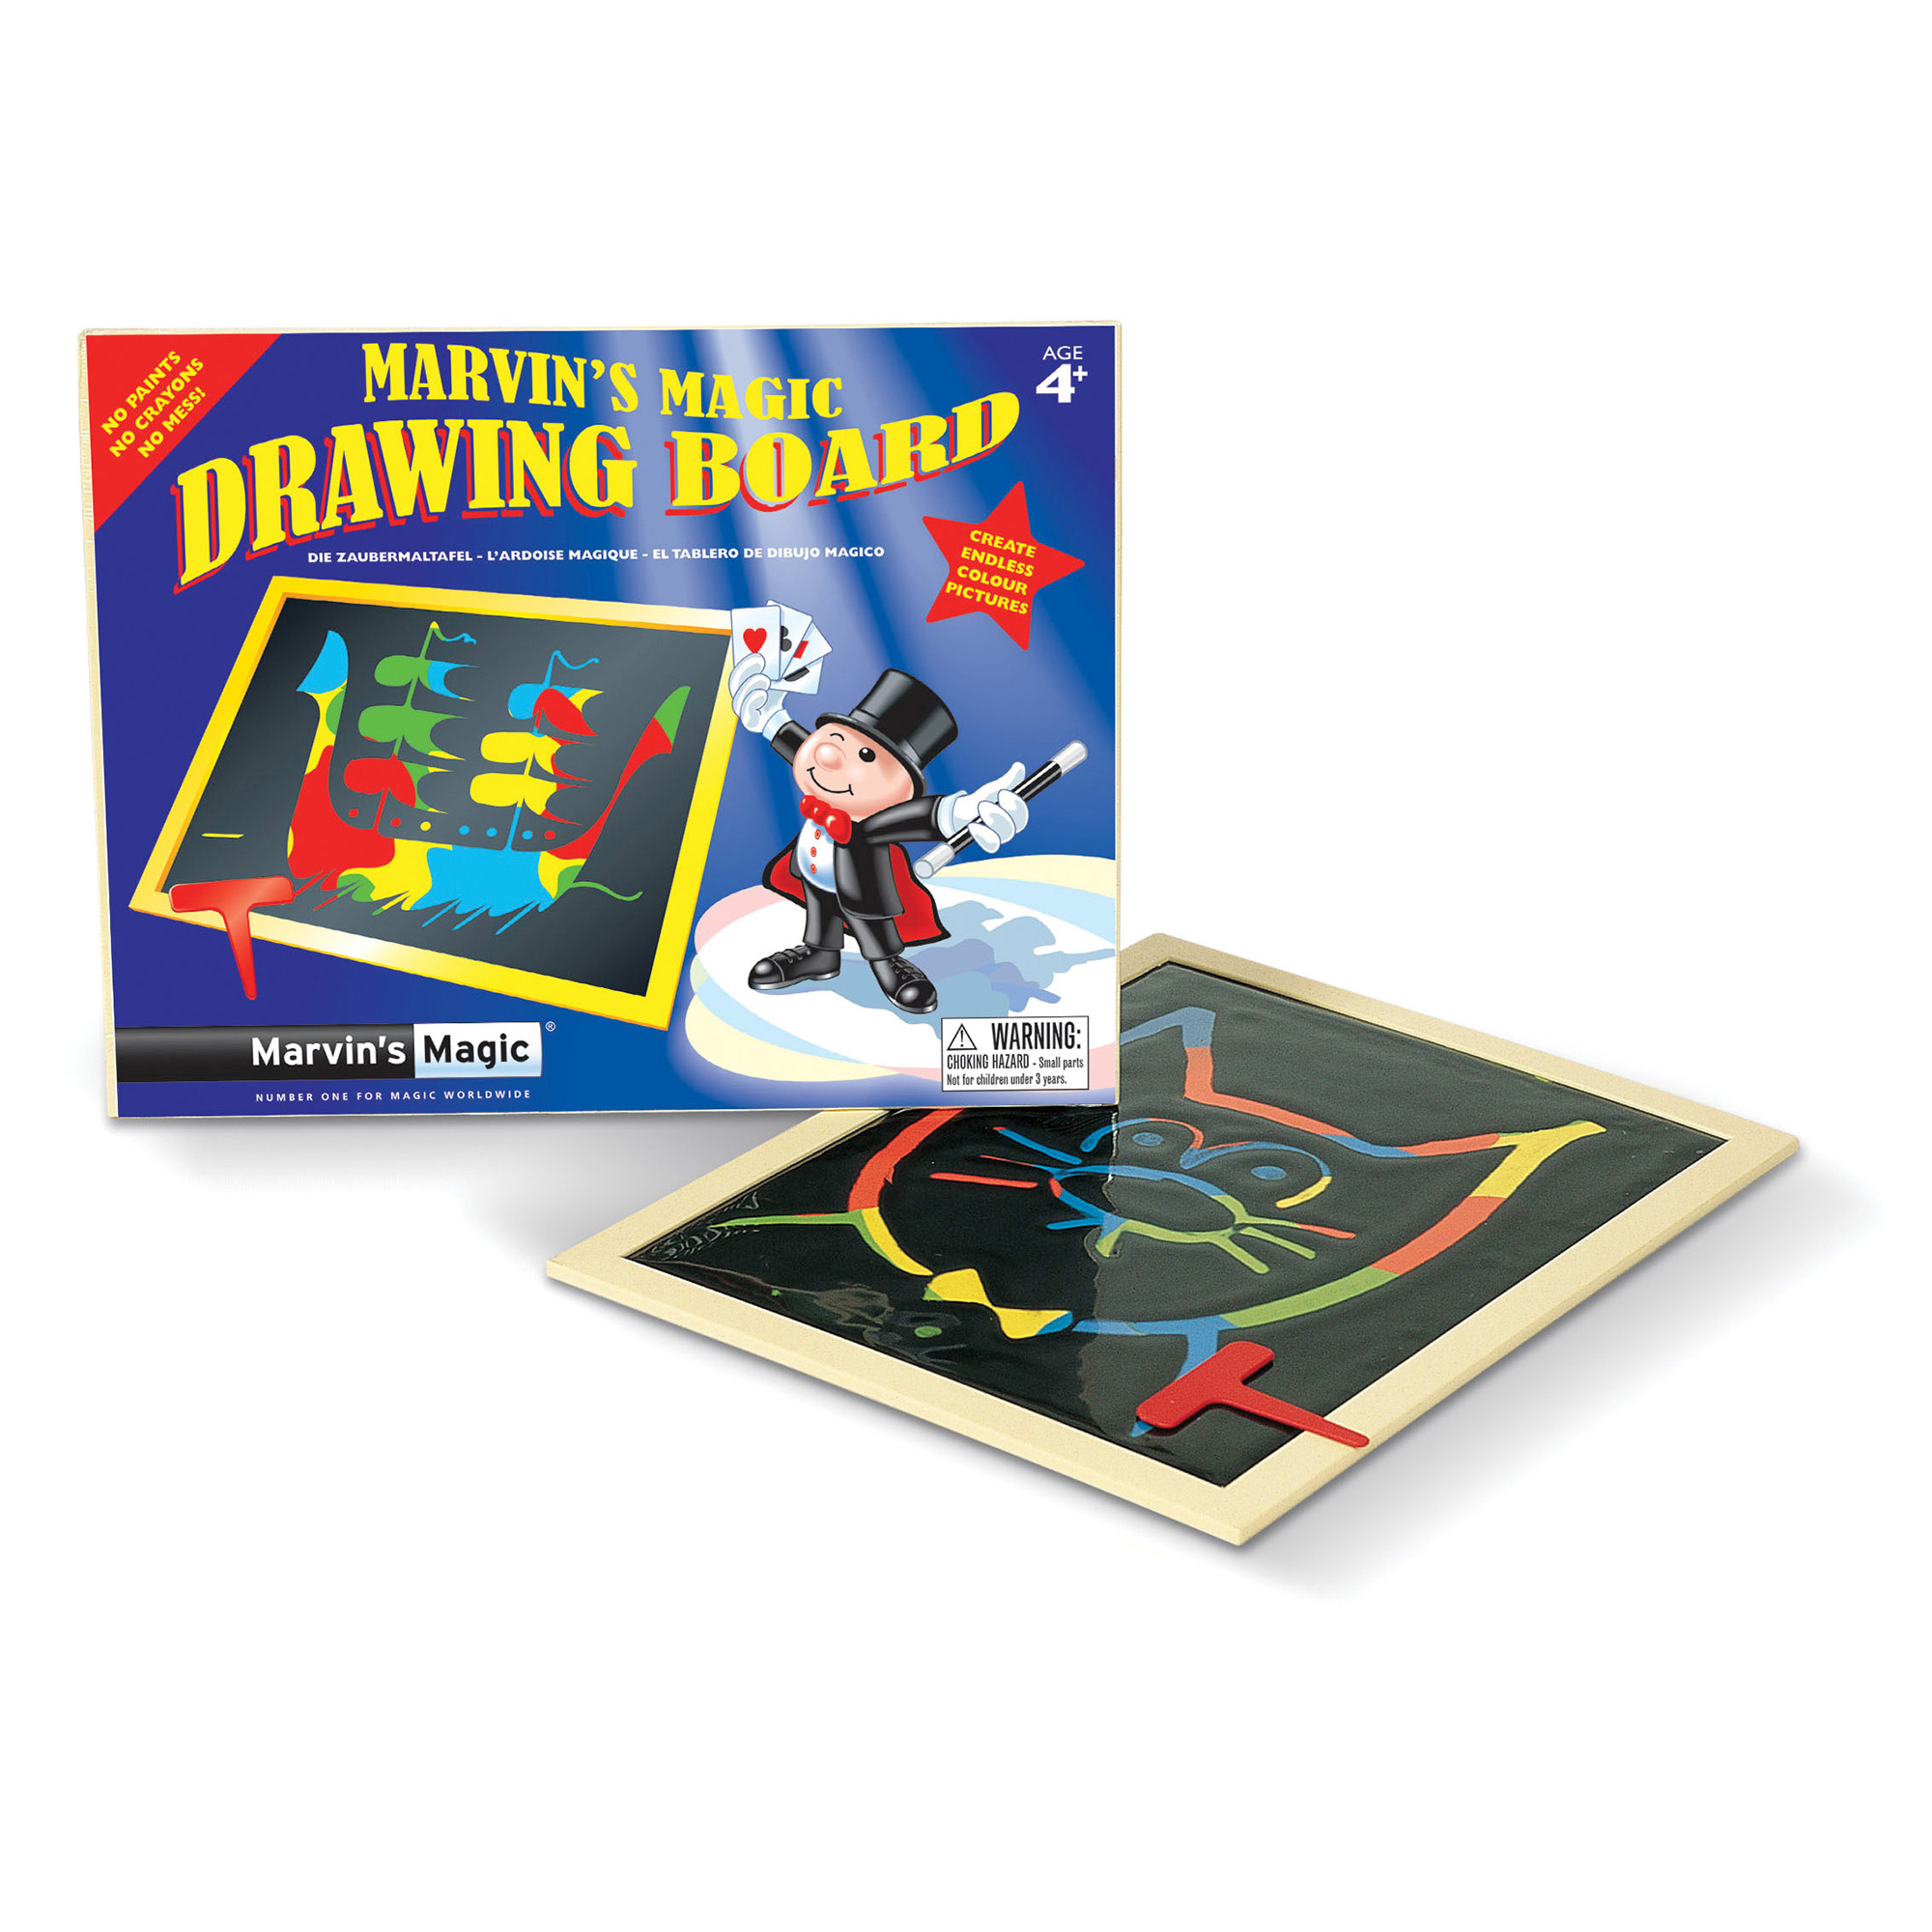 Magic Drawing Board, tavola da disegno magica - Marvin's Magic